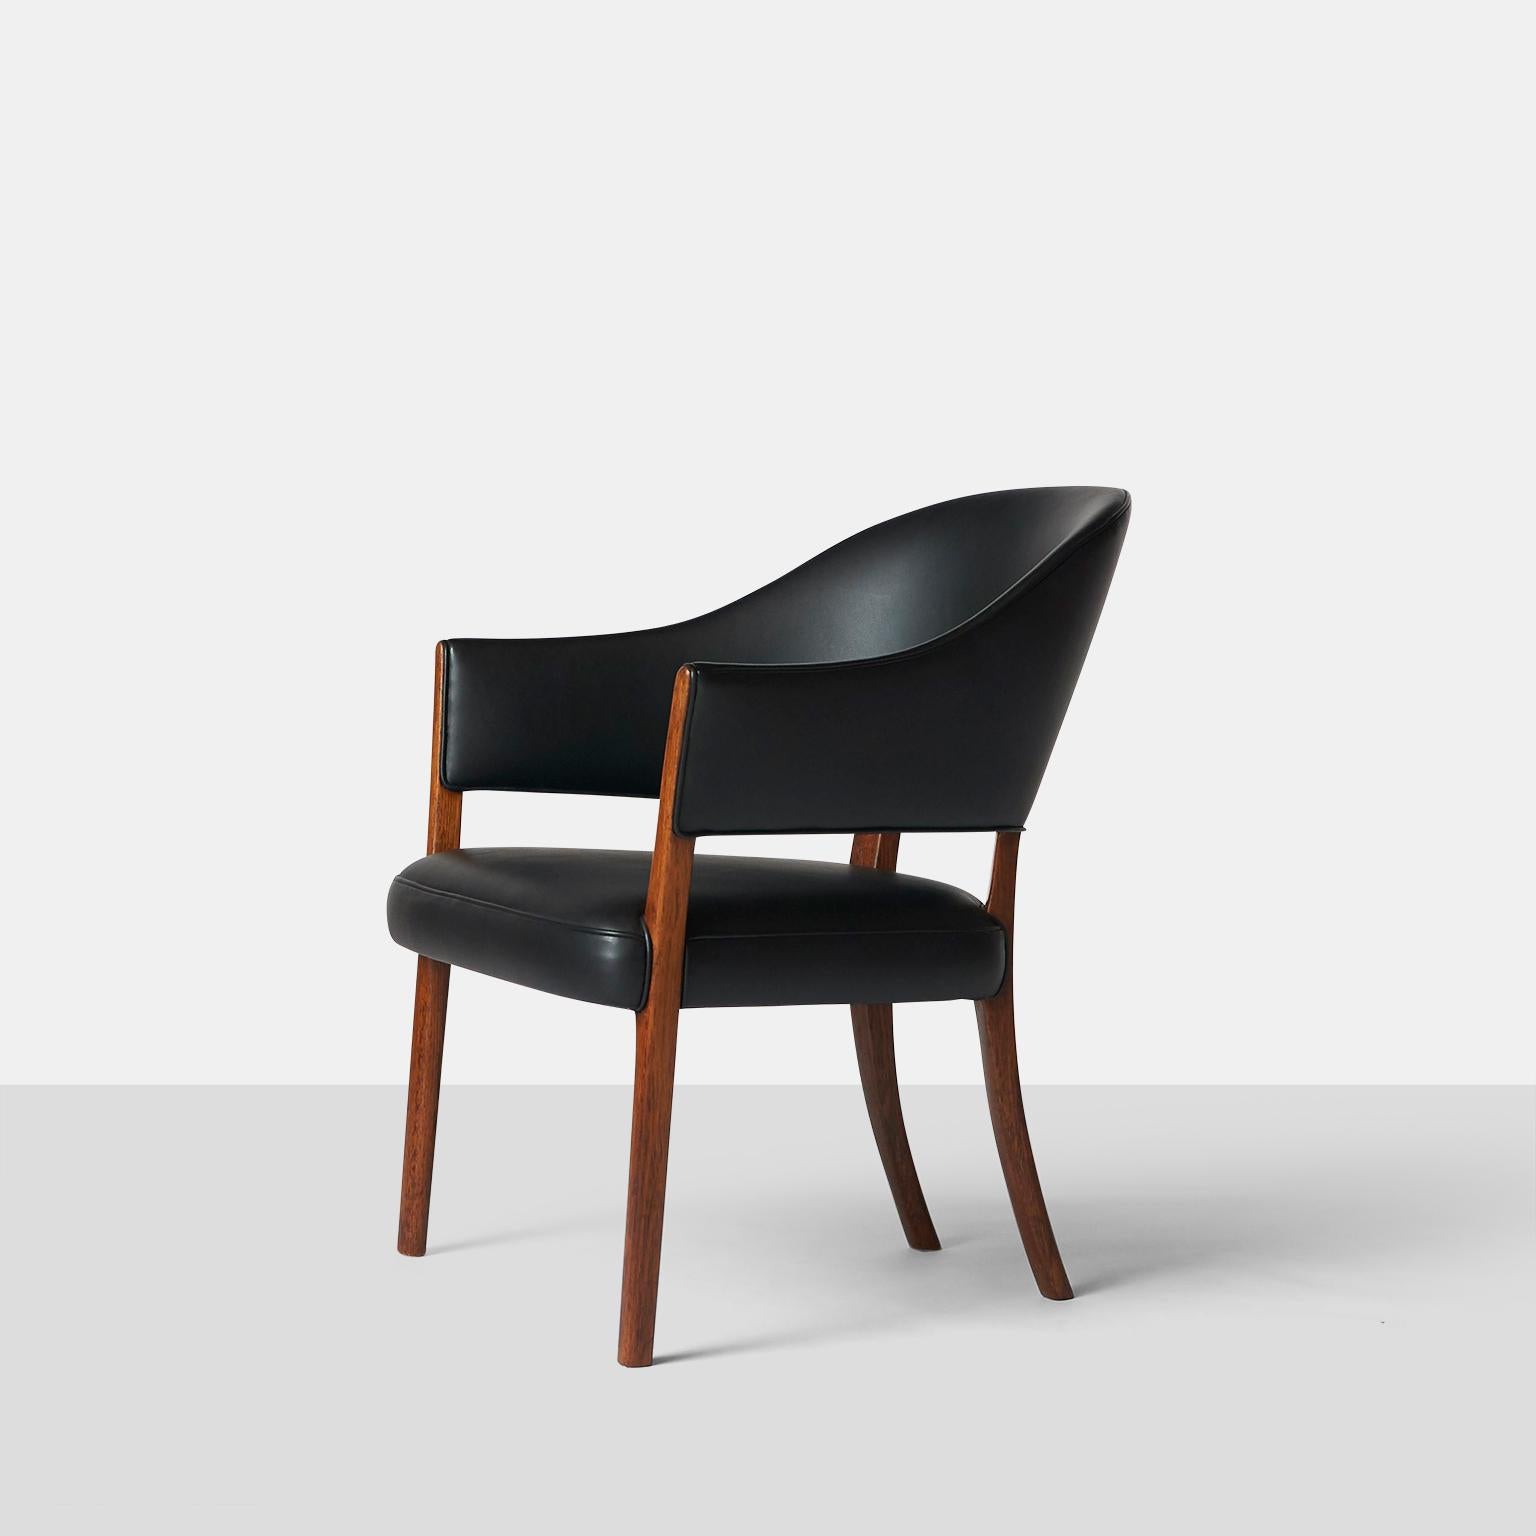 Ein Sessel mit einem Gestell aus Palisanderholz. Sitz und Rückenlehne mit patiniertem schwarzem Leder gepolstert. Hergestellt vom Tischler A. J. Iversen, Kopenhagen. Das Modell wurde 1962 auf der Ausstellung der Kopenhagener Tischlerinnung